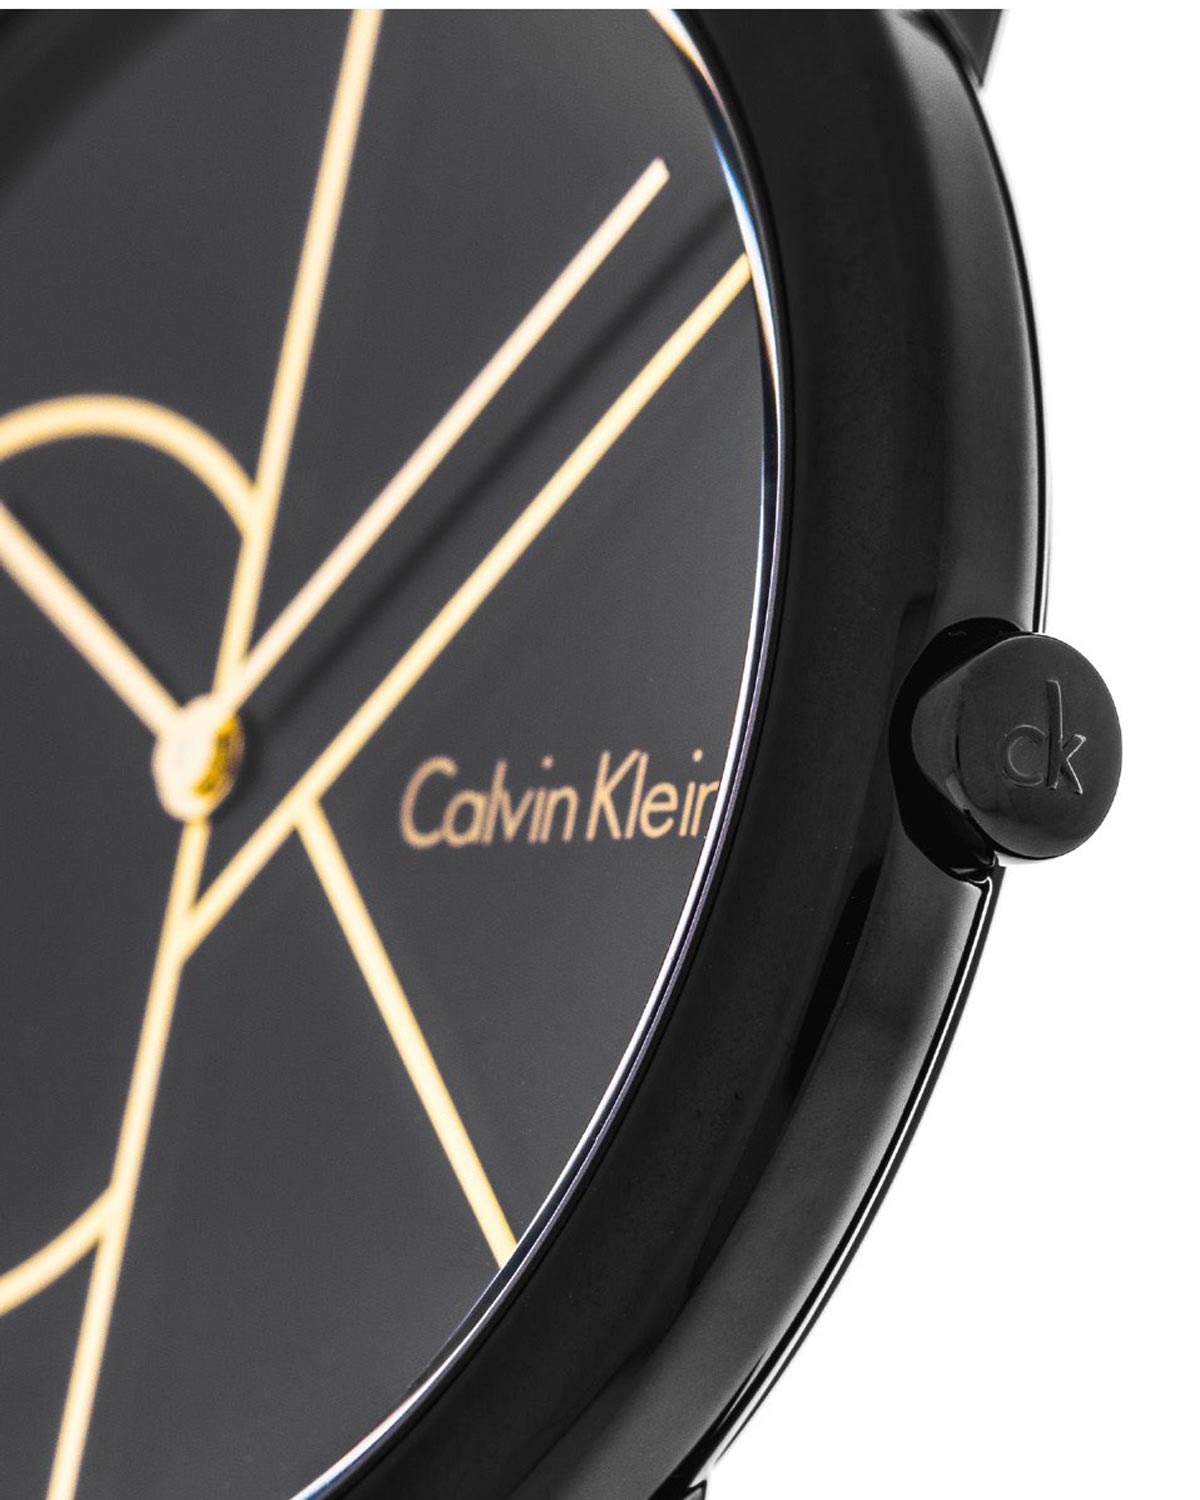 שעון יד CALVIN KLEIN – K3M214X1